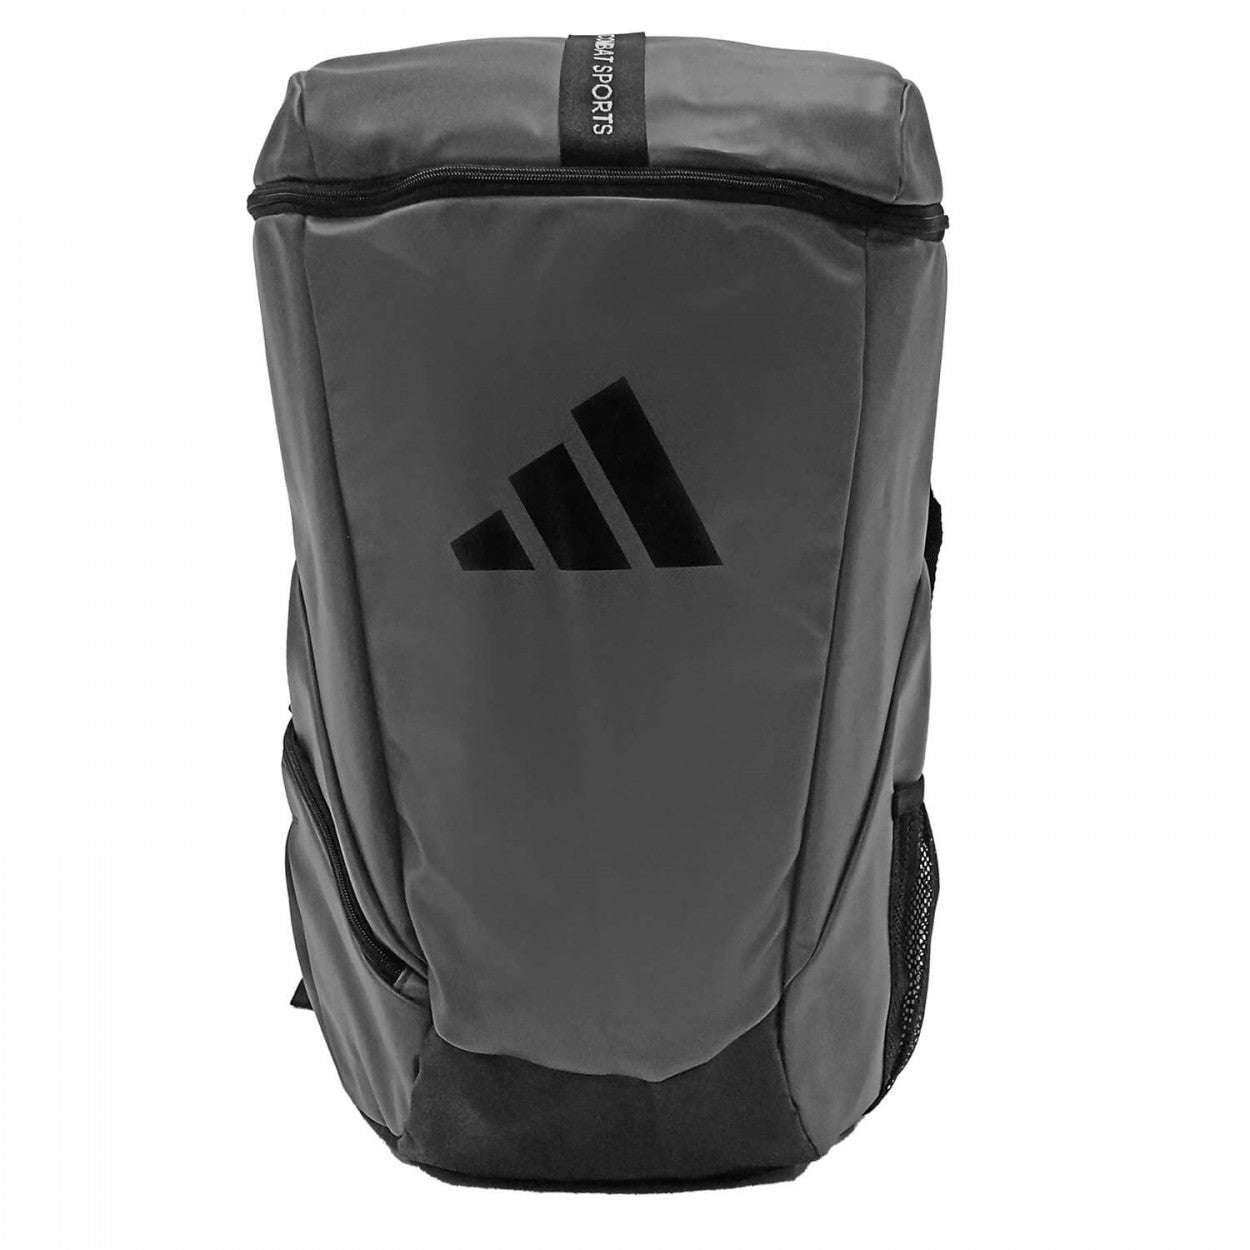 Αθλητική Τσάντα adidas COMBAT SPORTS Σακίδιο πλάτης, Γκρι